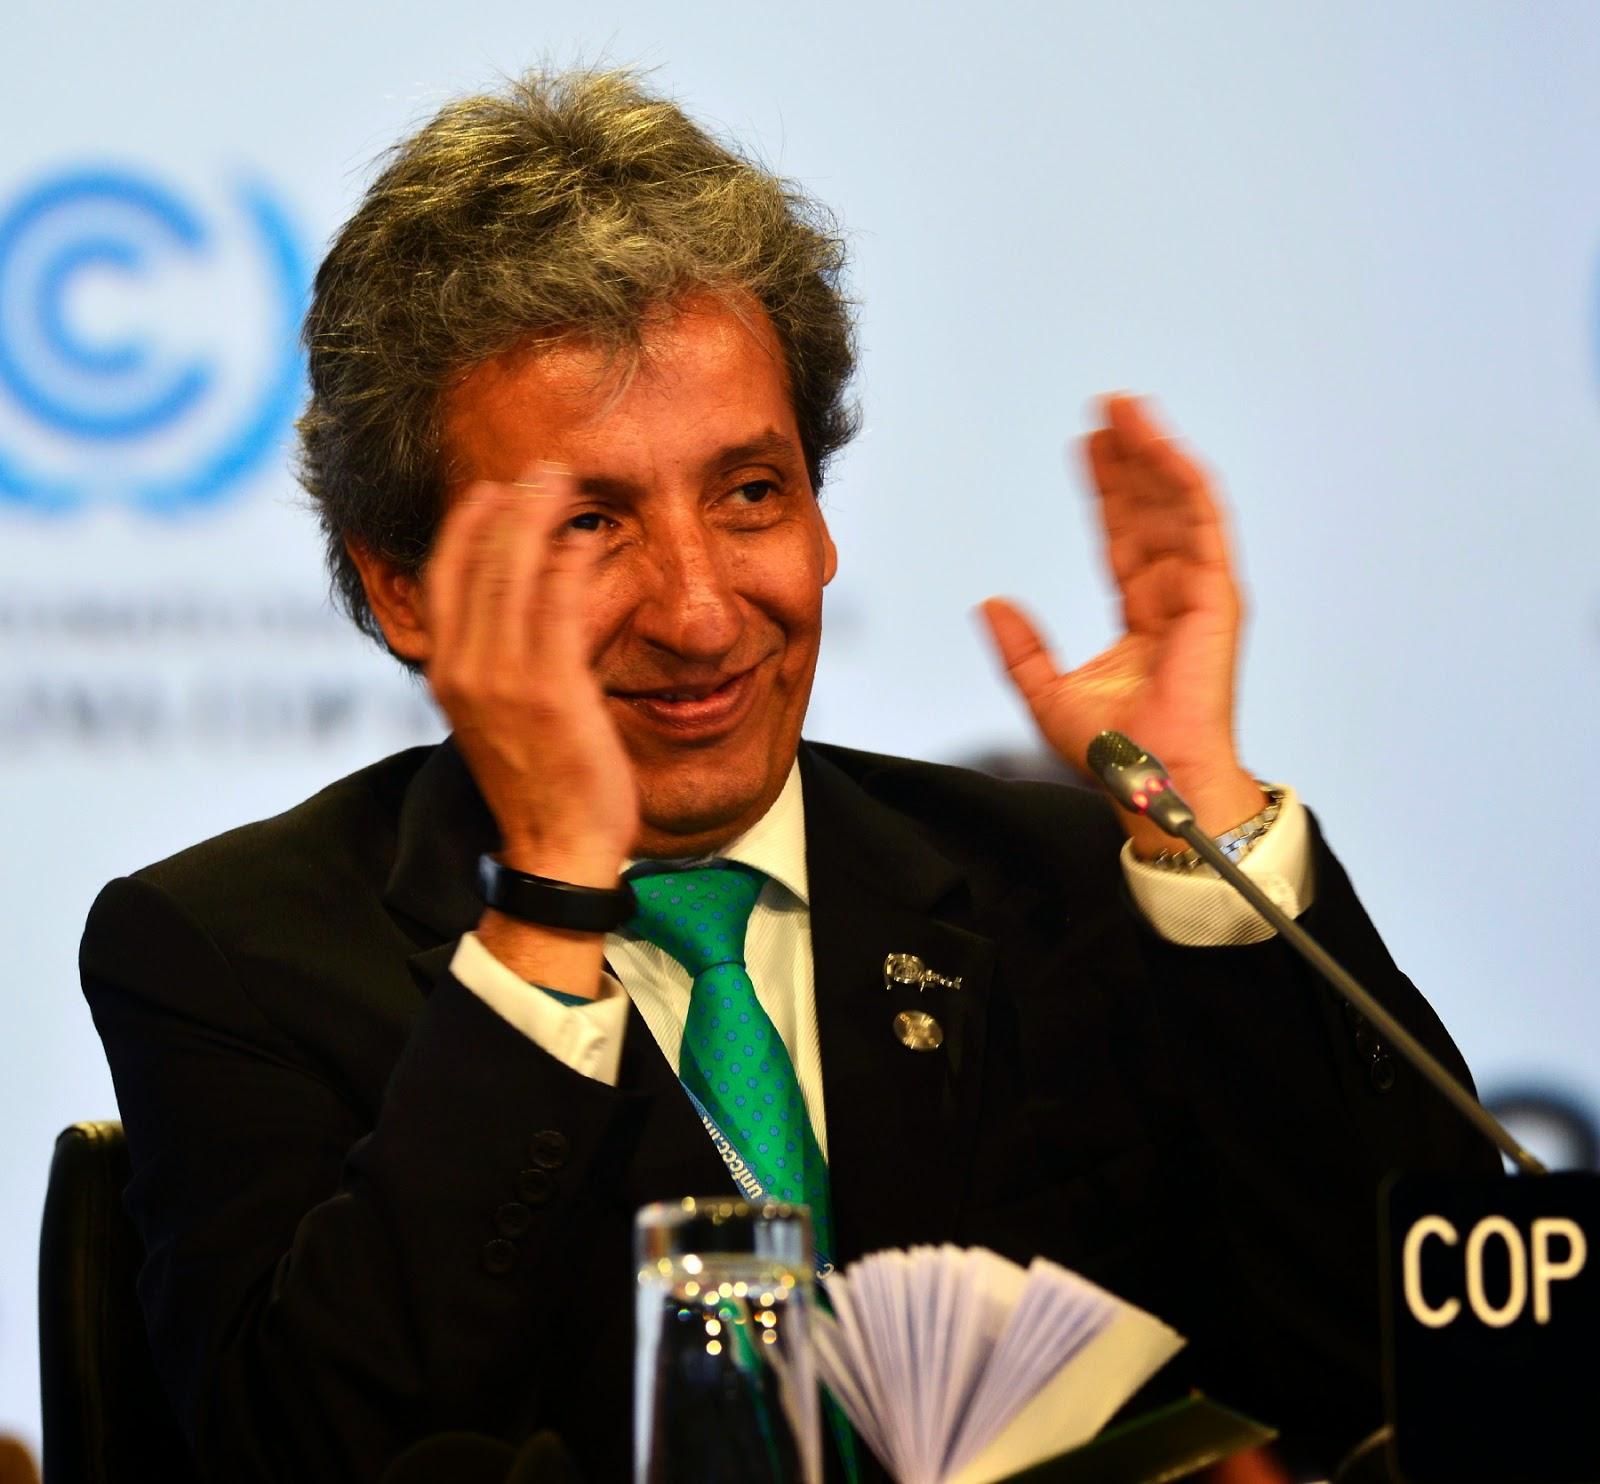 MONDE > Accord sur les engagements de réduction des émissions de CO2 à Lima